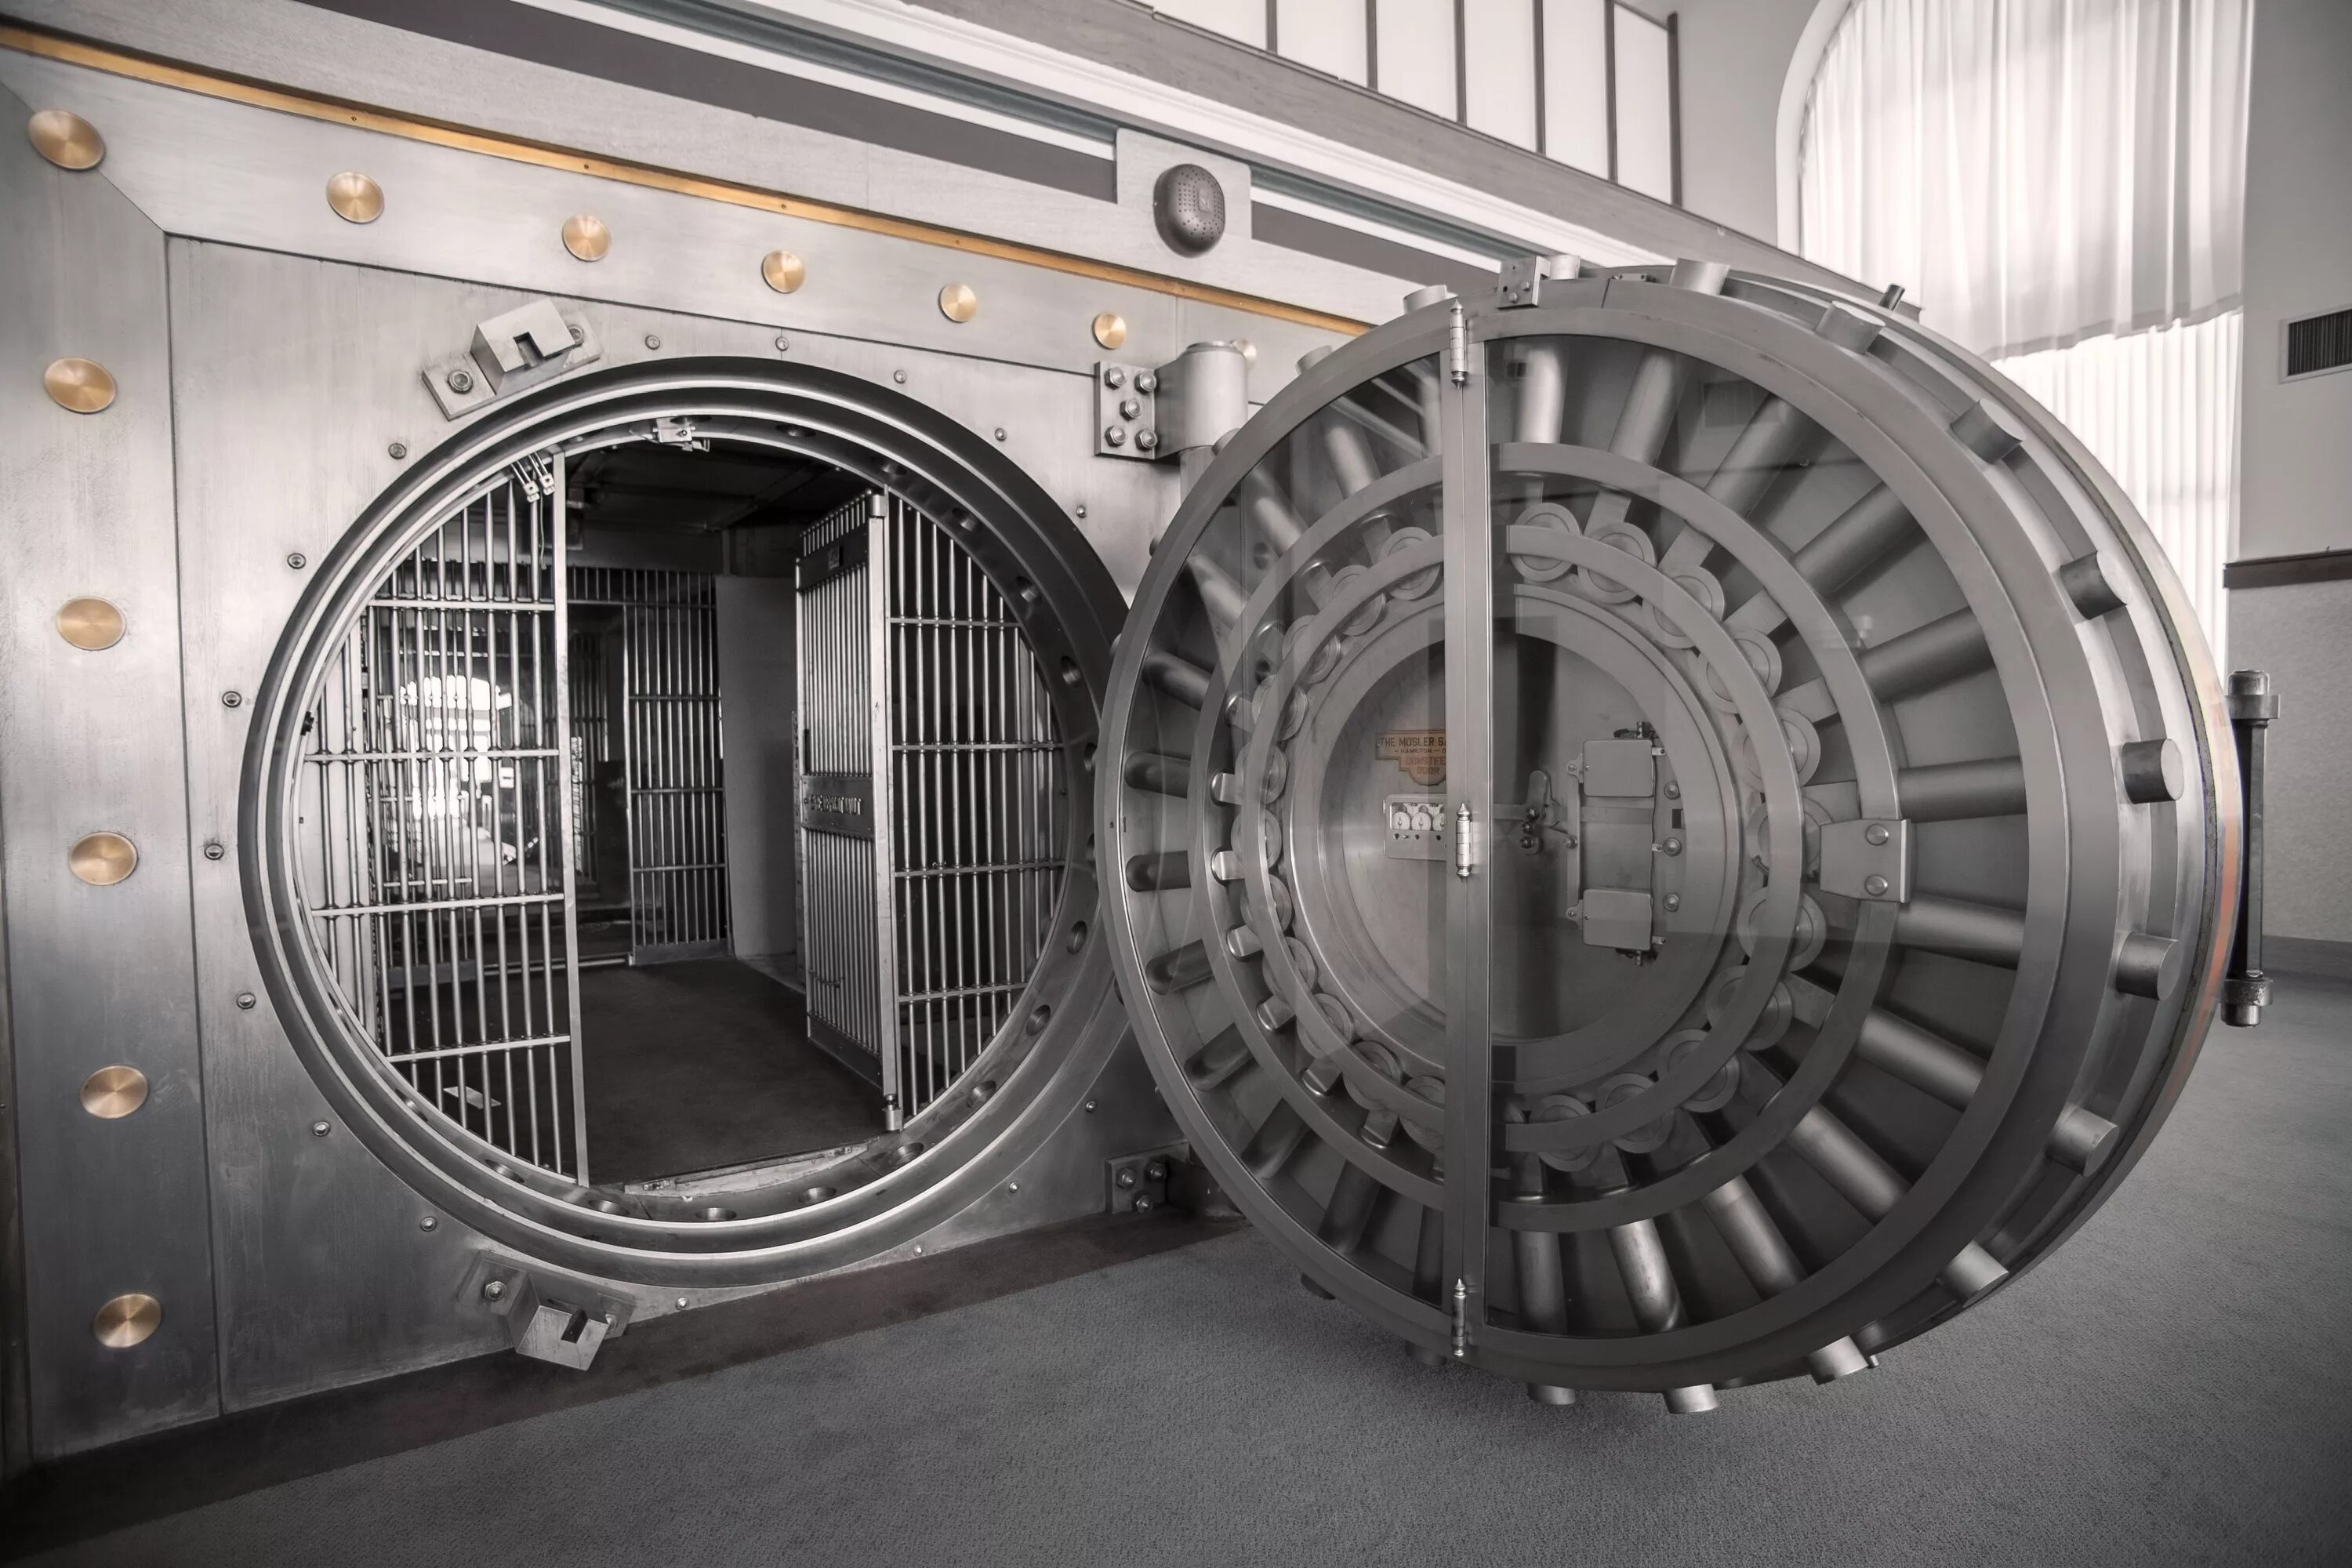 Хранилище the Vault. Дверь банковского хранилища. Банковский сейф. Банковское хранилище с круглой дверь. Ball vault